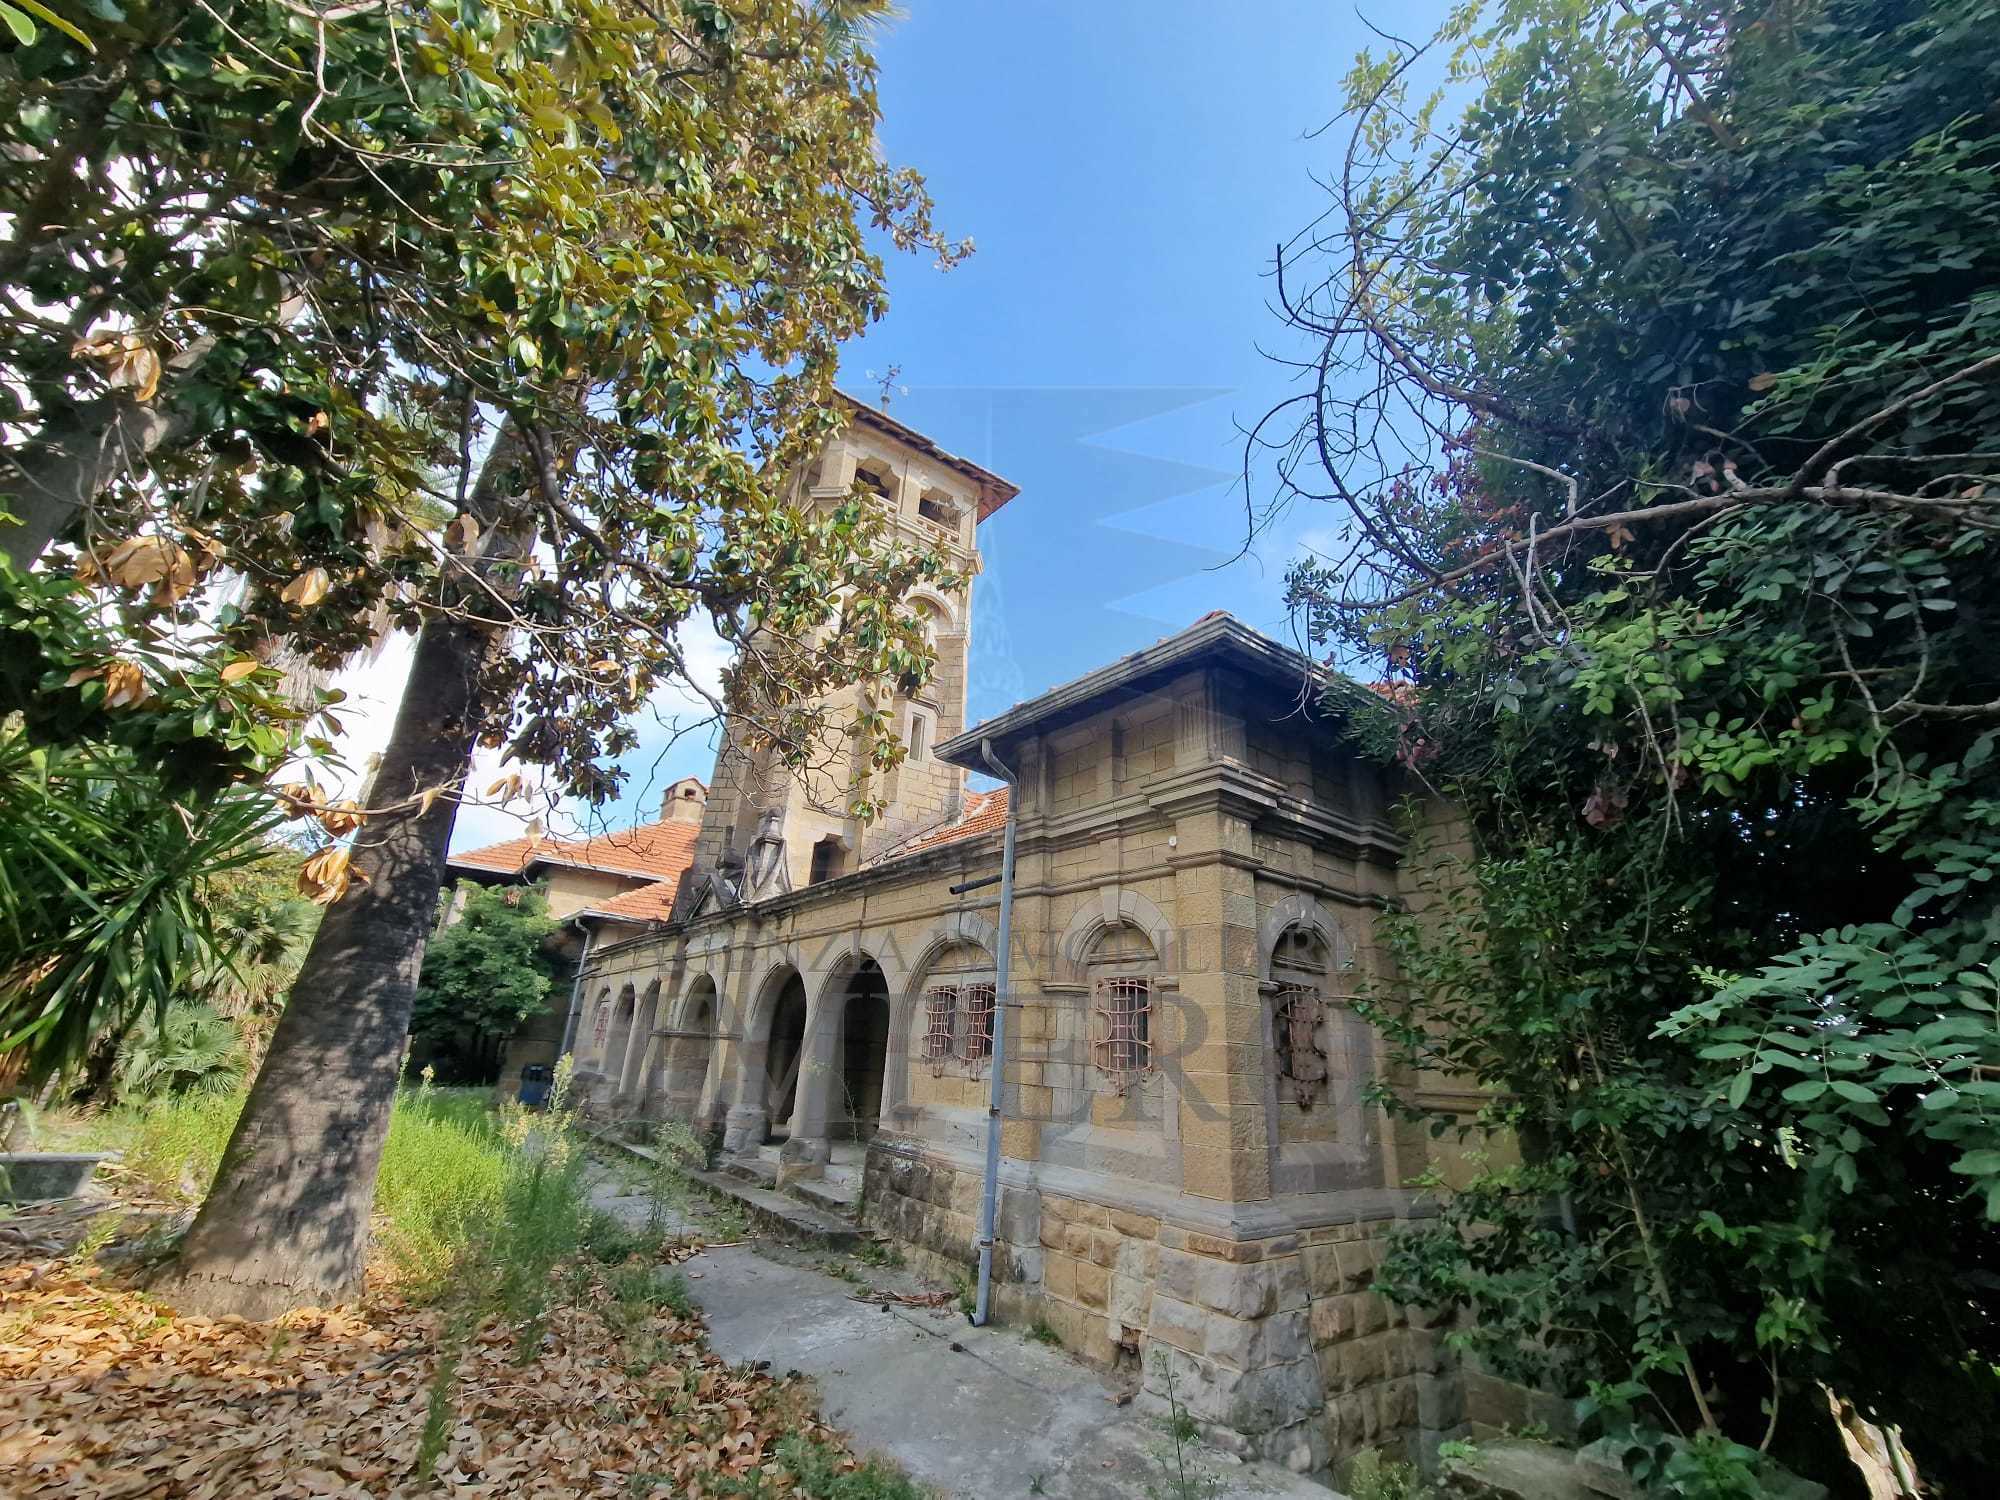 Villa con giardino in corso nizza 37, Ventimiglia